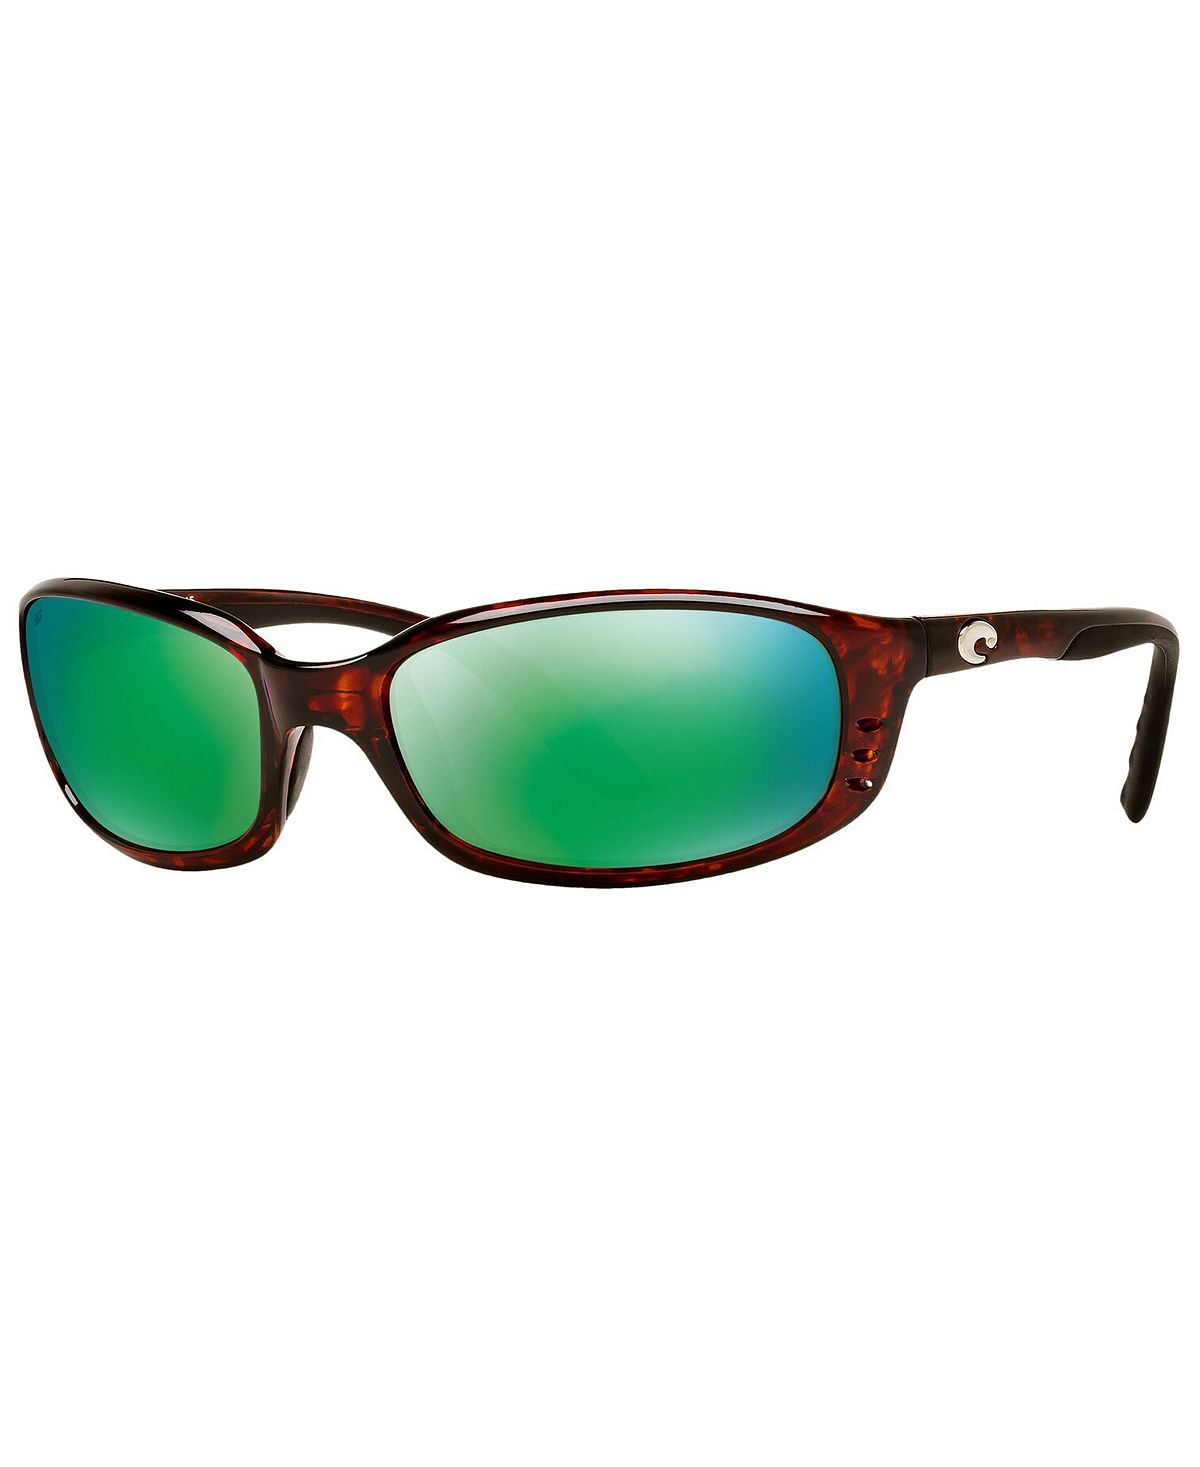 Поляризационные солнцезащитные очки, BRINE 06S000004 59P Costa Del Mar